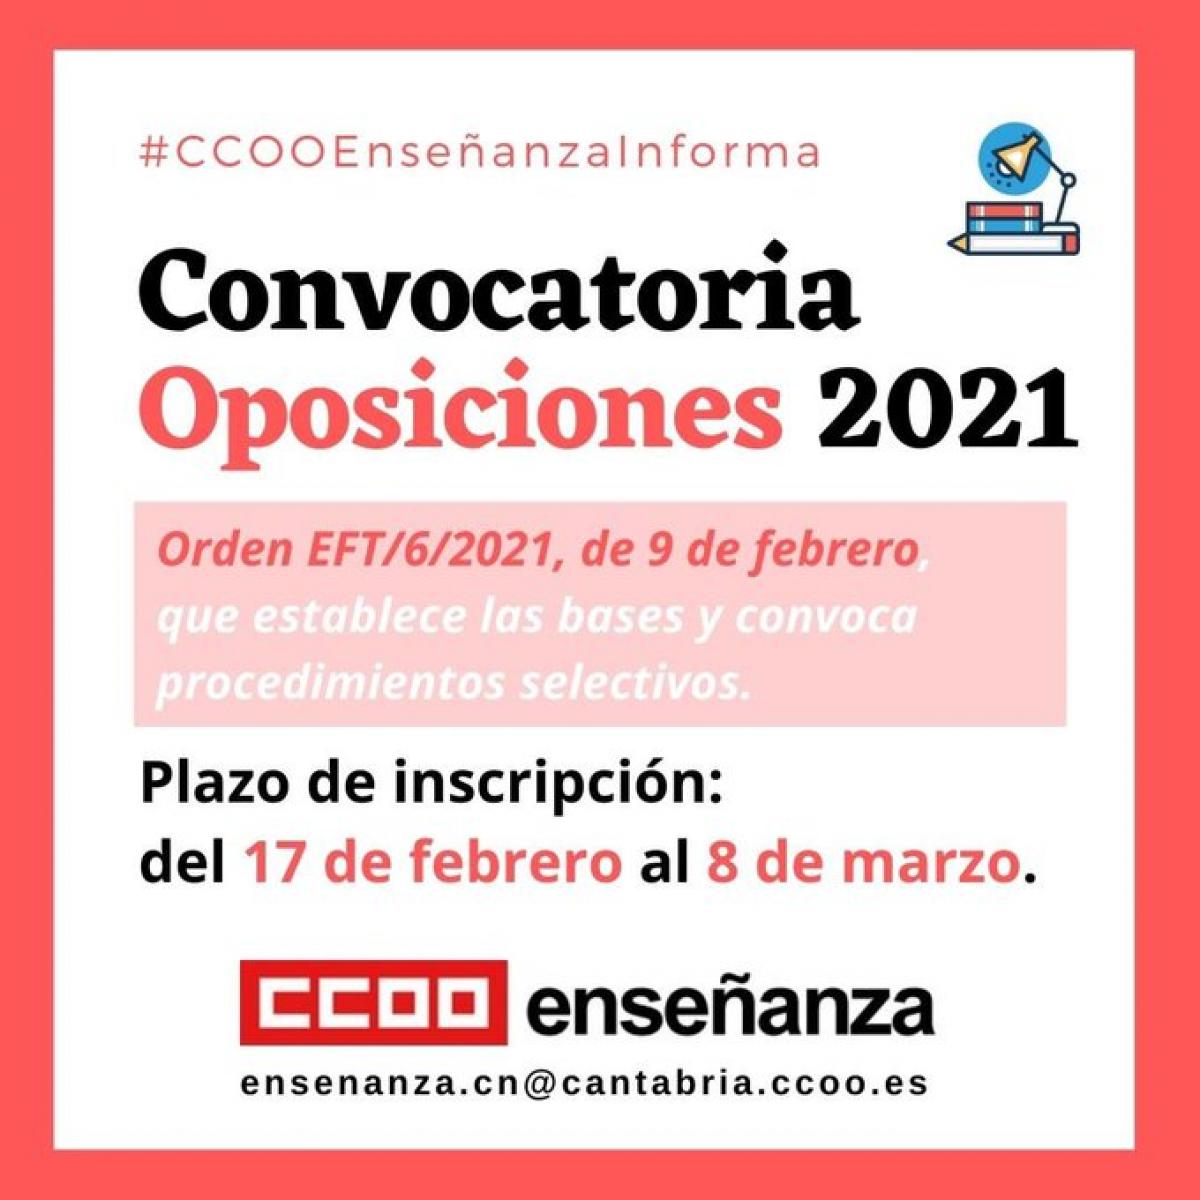 Oposiciones cantabria eemm 2021